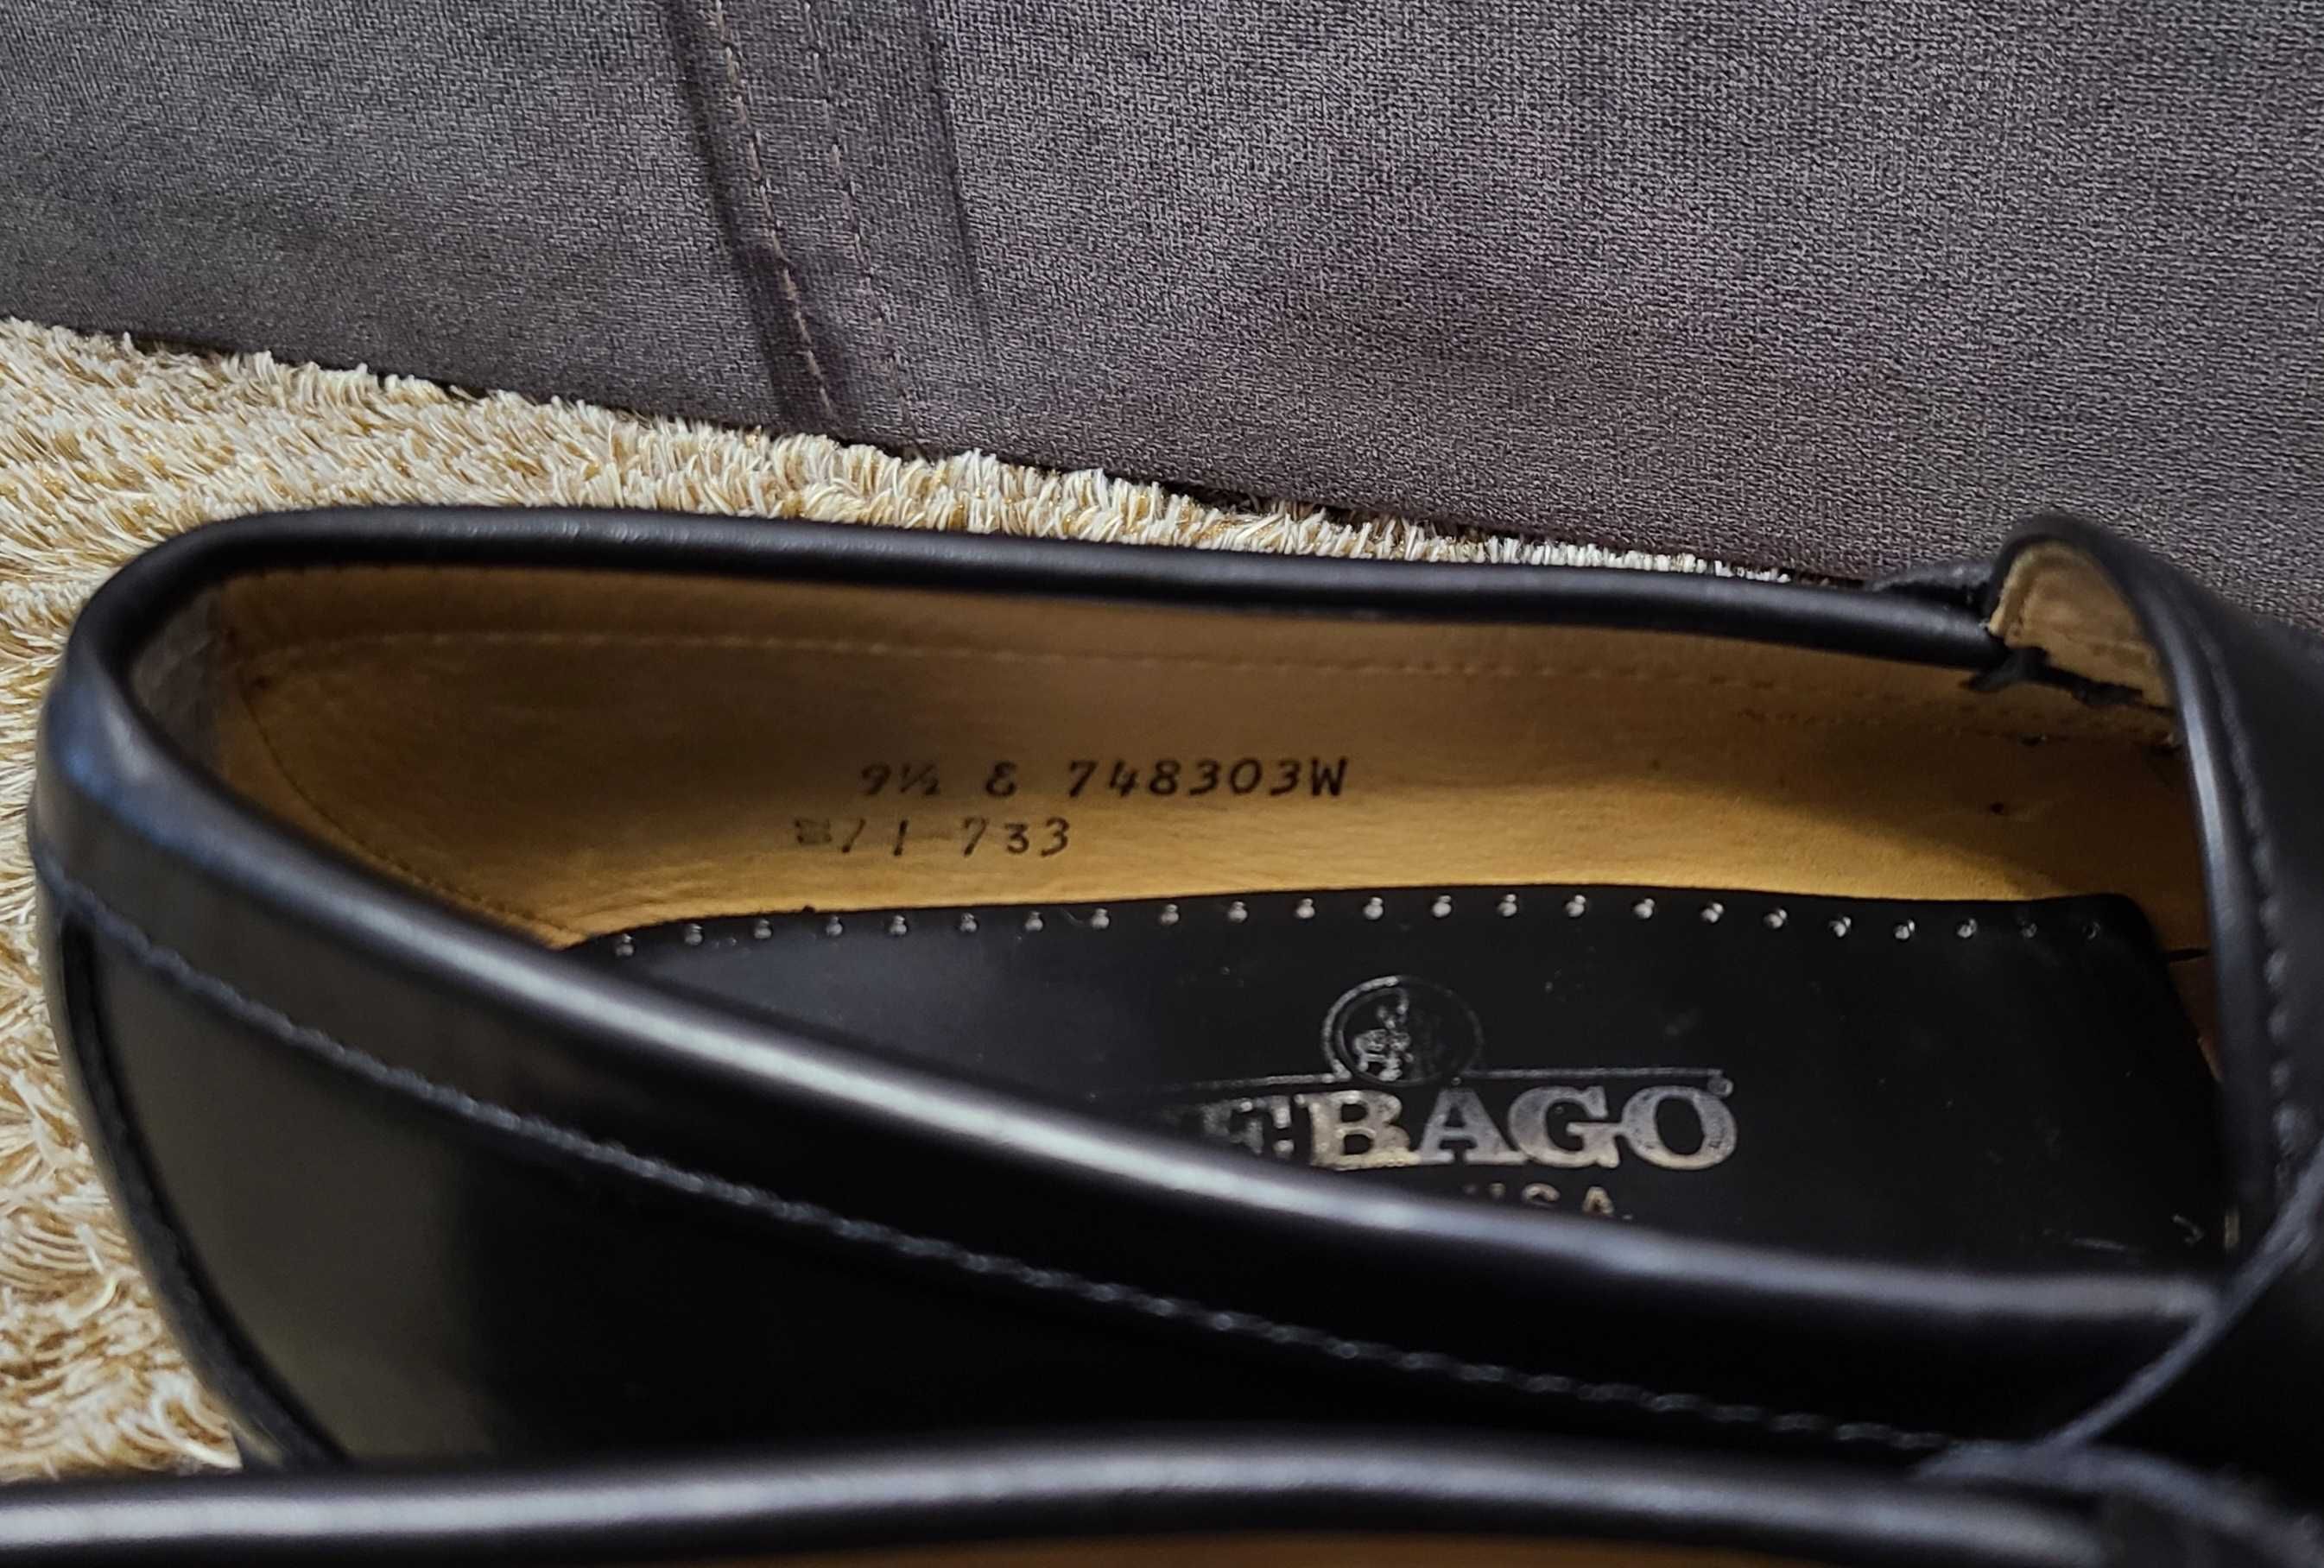 Чоловічі шкіряні туфлі лофери від американського бренда sebago